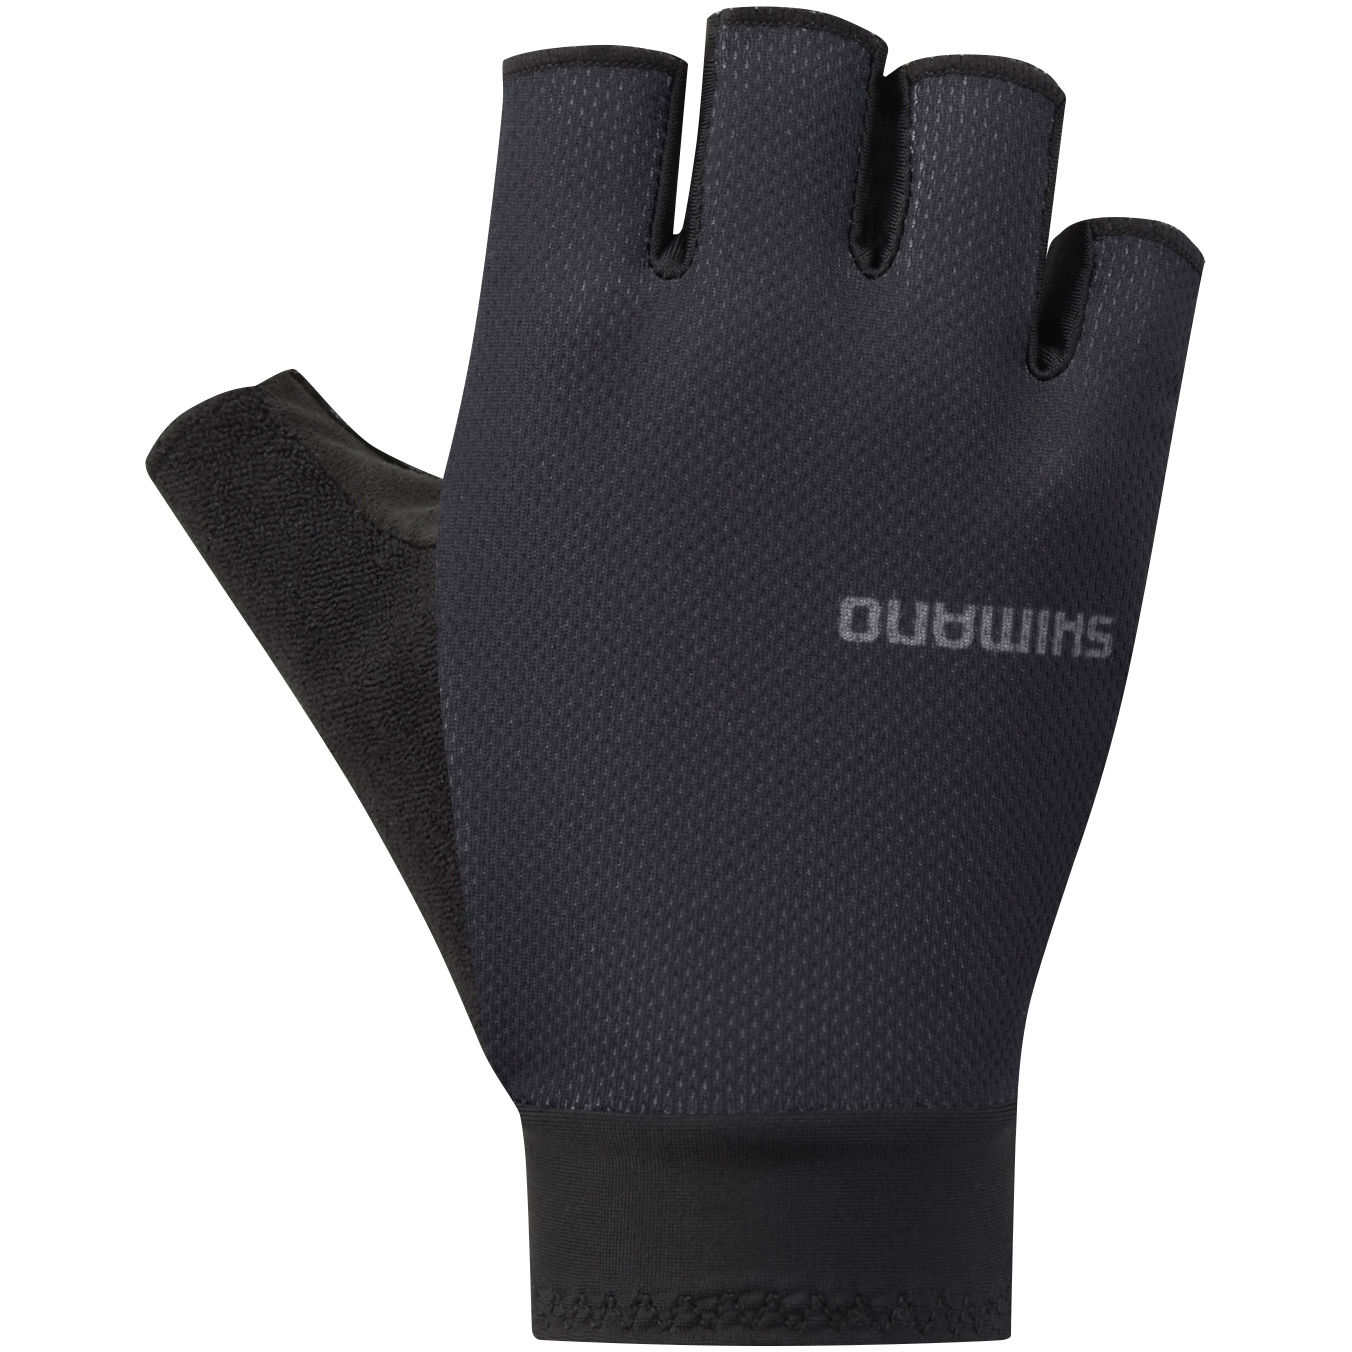 Produktbild von Shimano Explorer Damen Kurzfinger-Handschuhe - schwarz